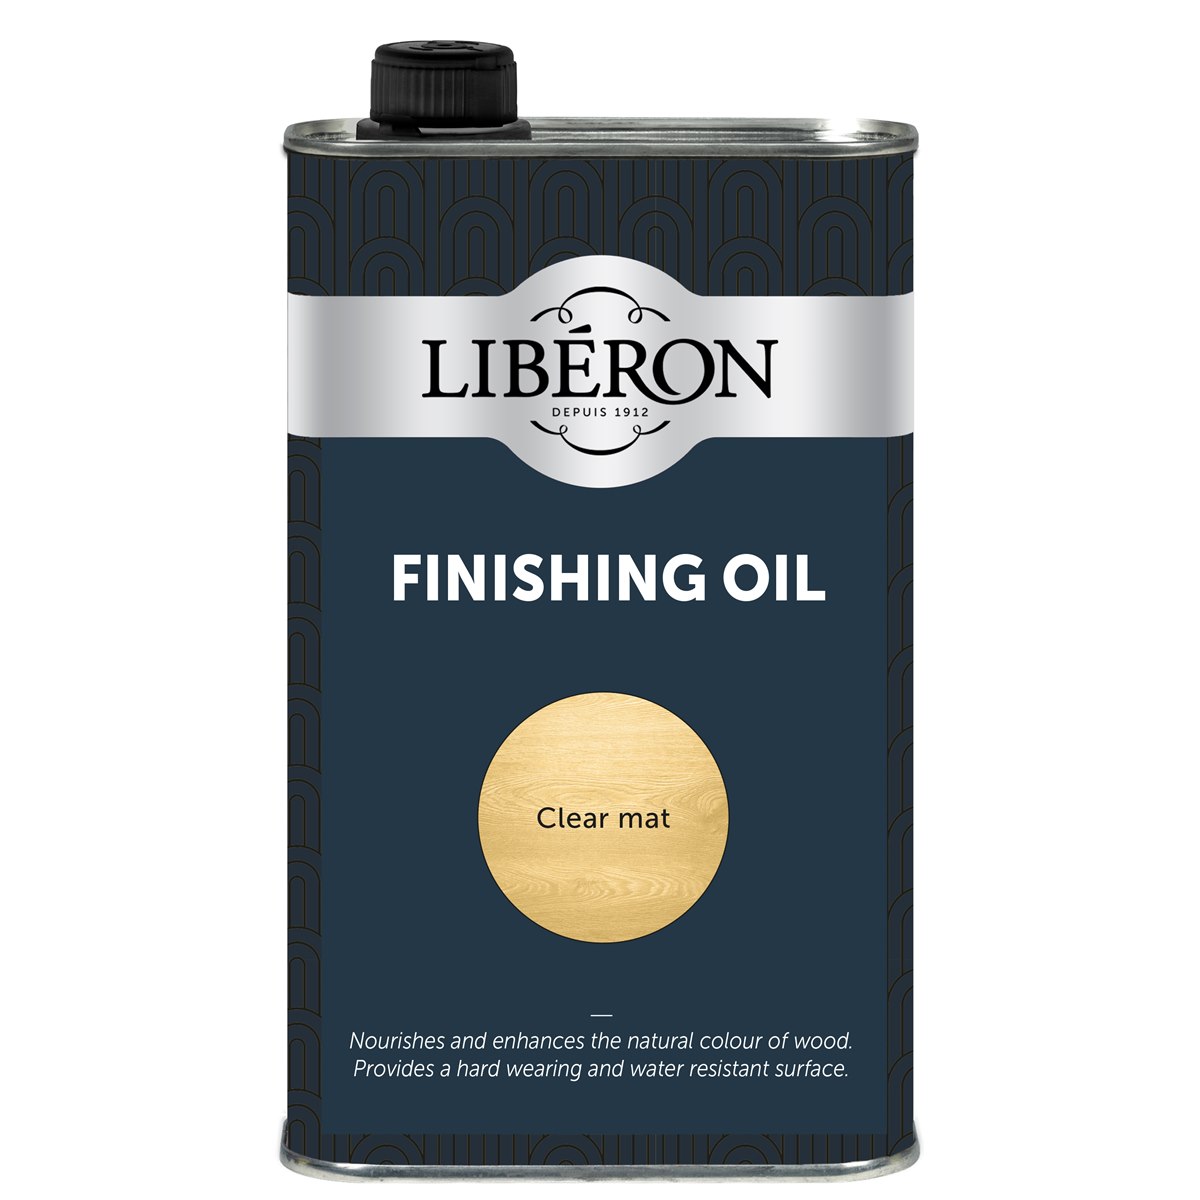 Liberon Finishing Oil 1 Litre